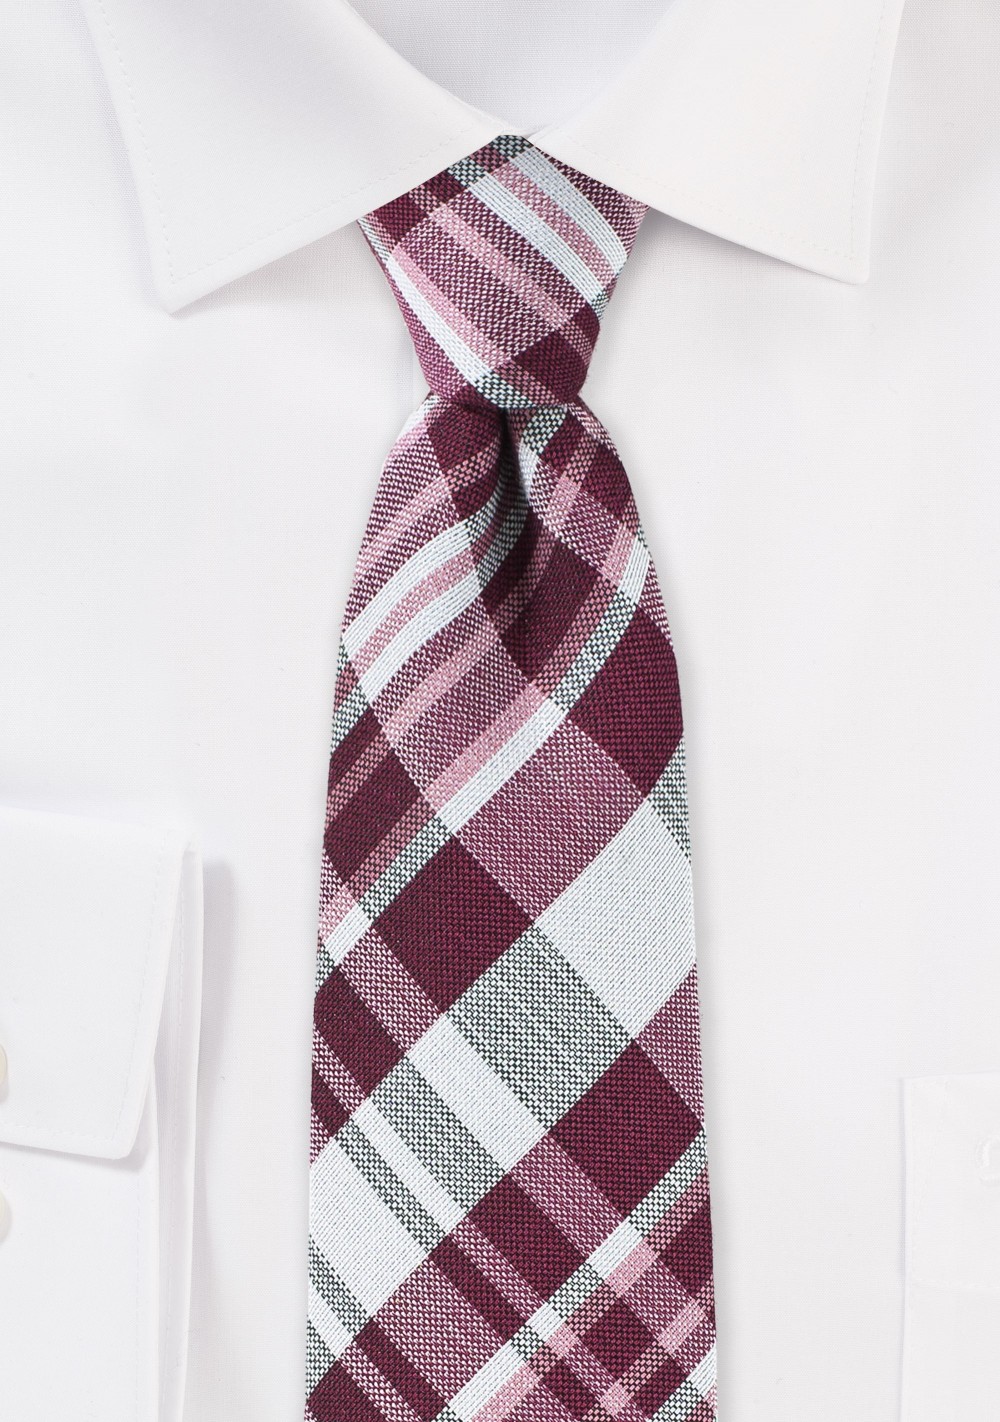 Textured Cotton Plaid Tie in Burgundy